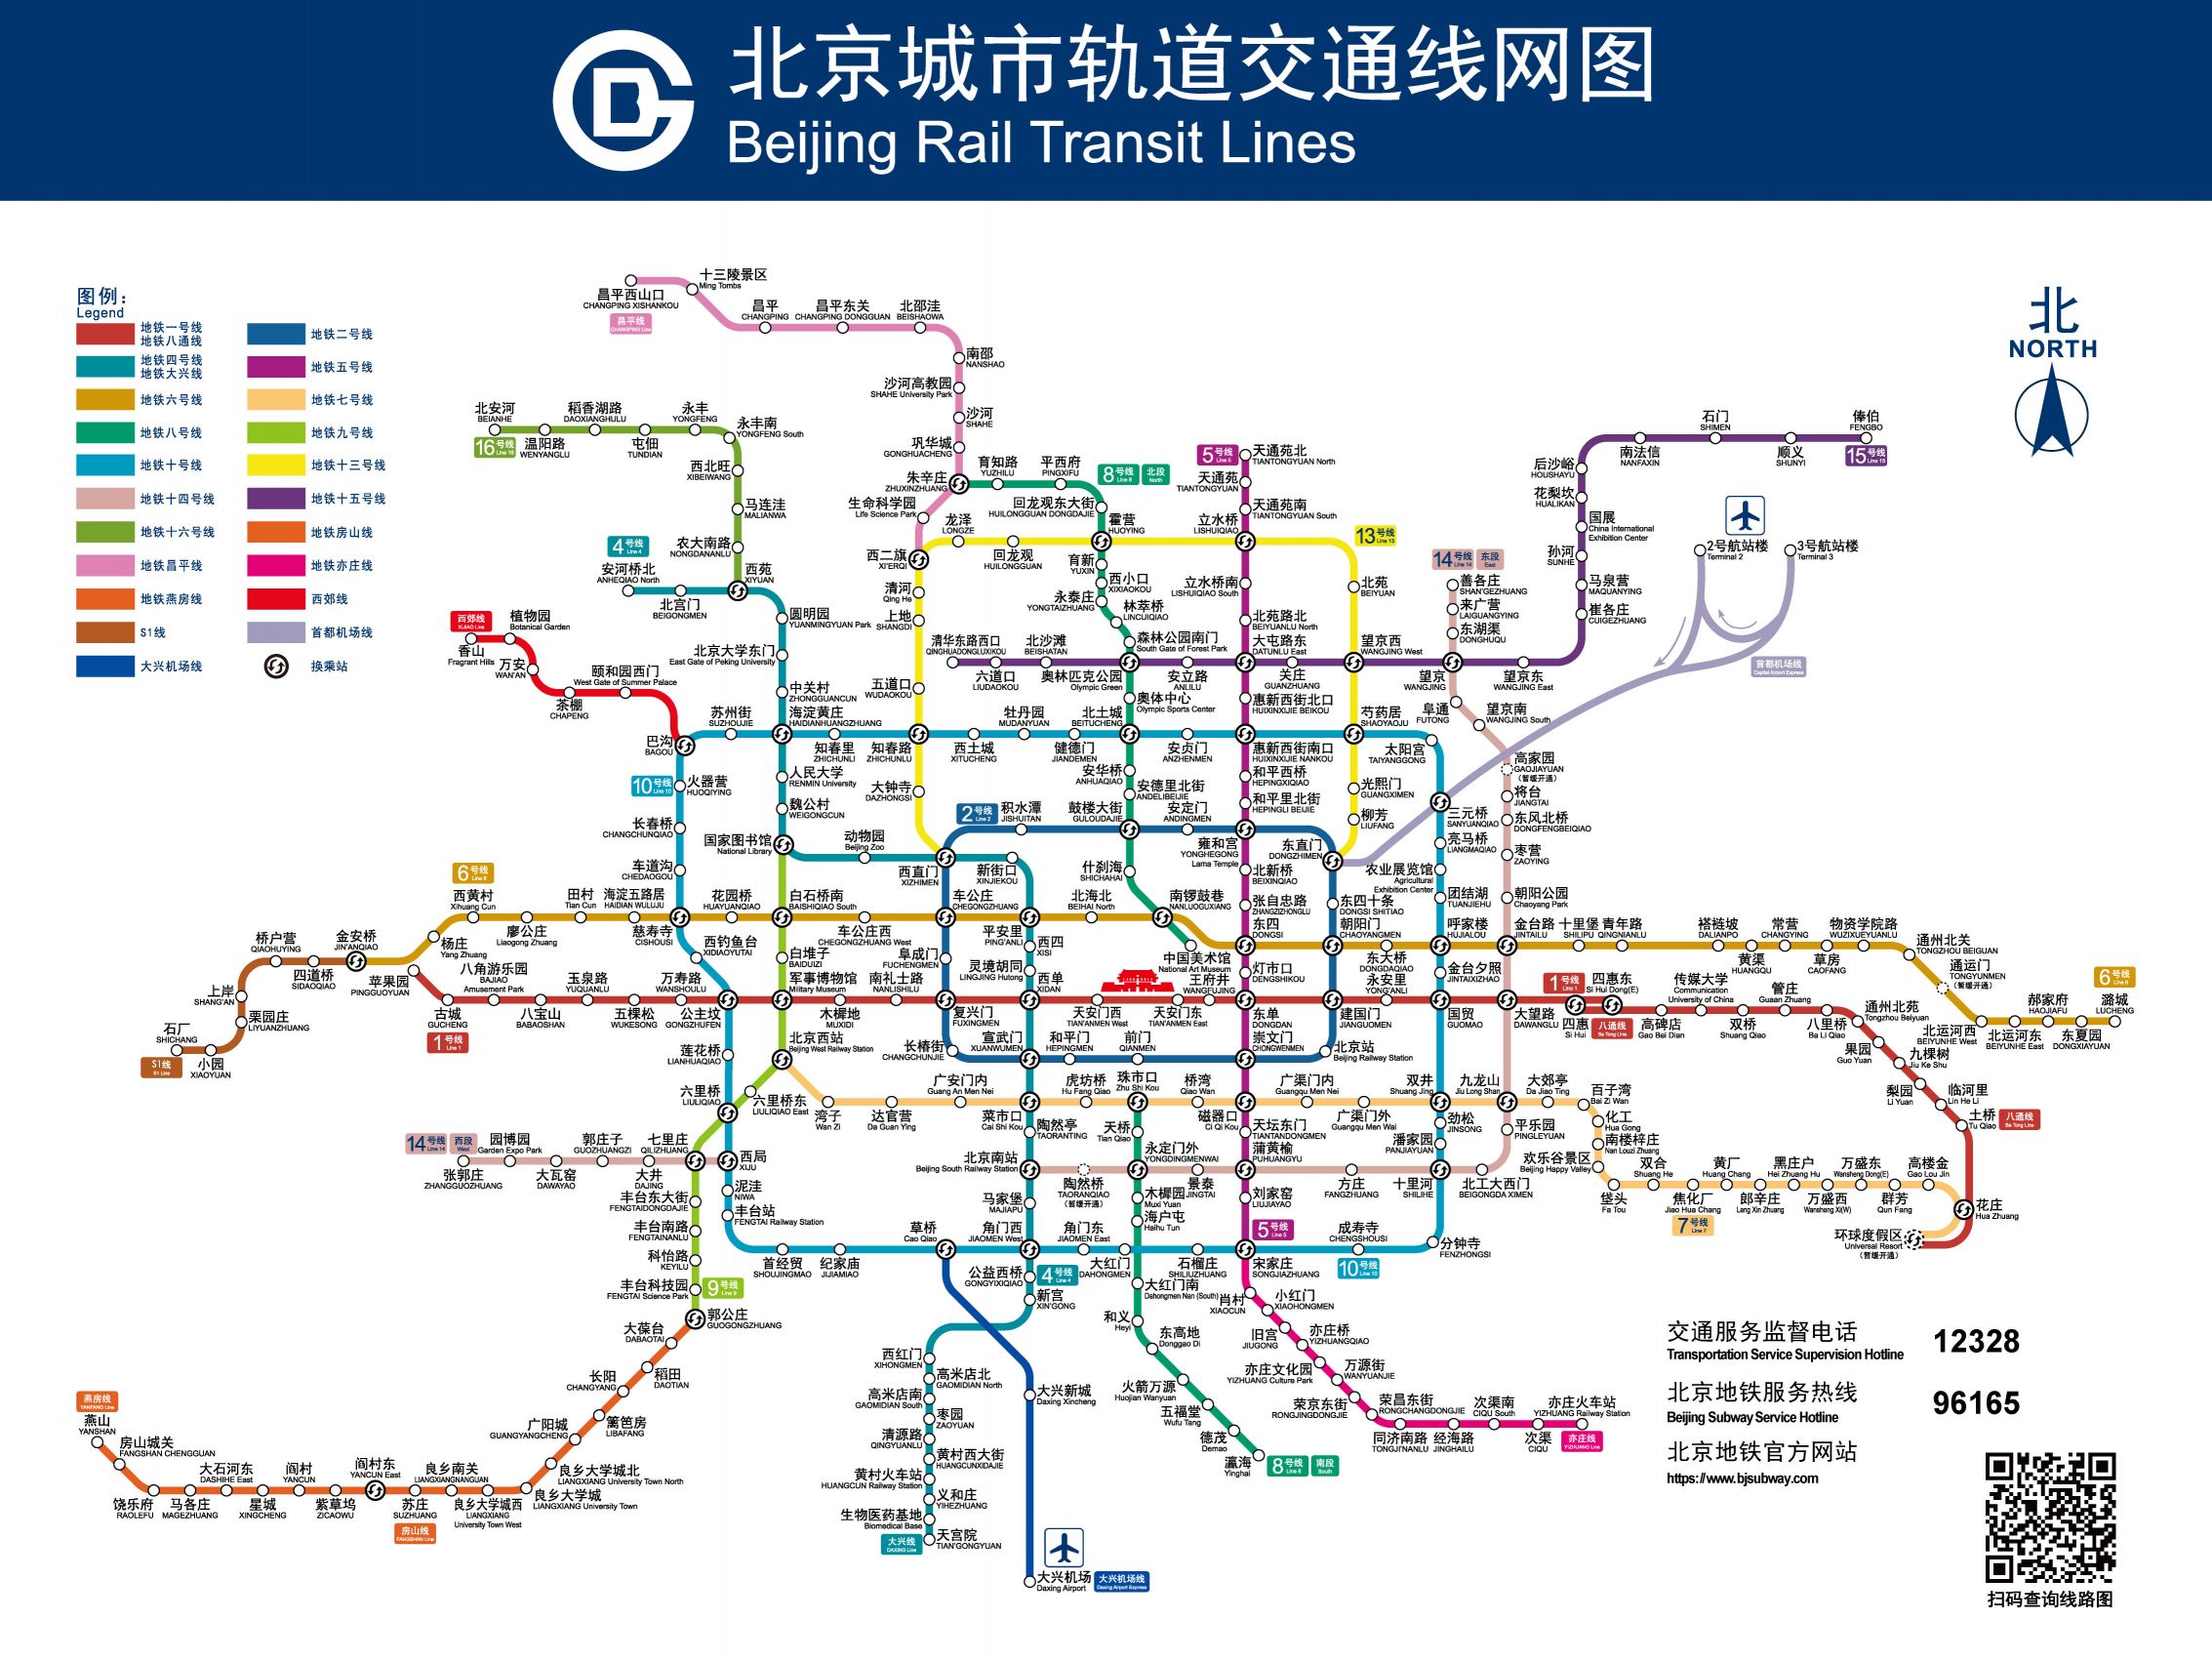 2020年最新北京地铁线路图高清晰放大版